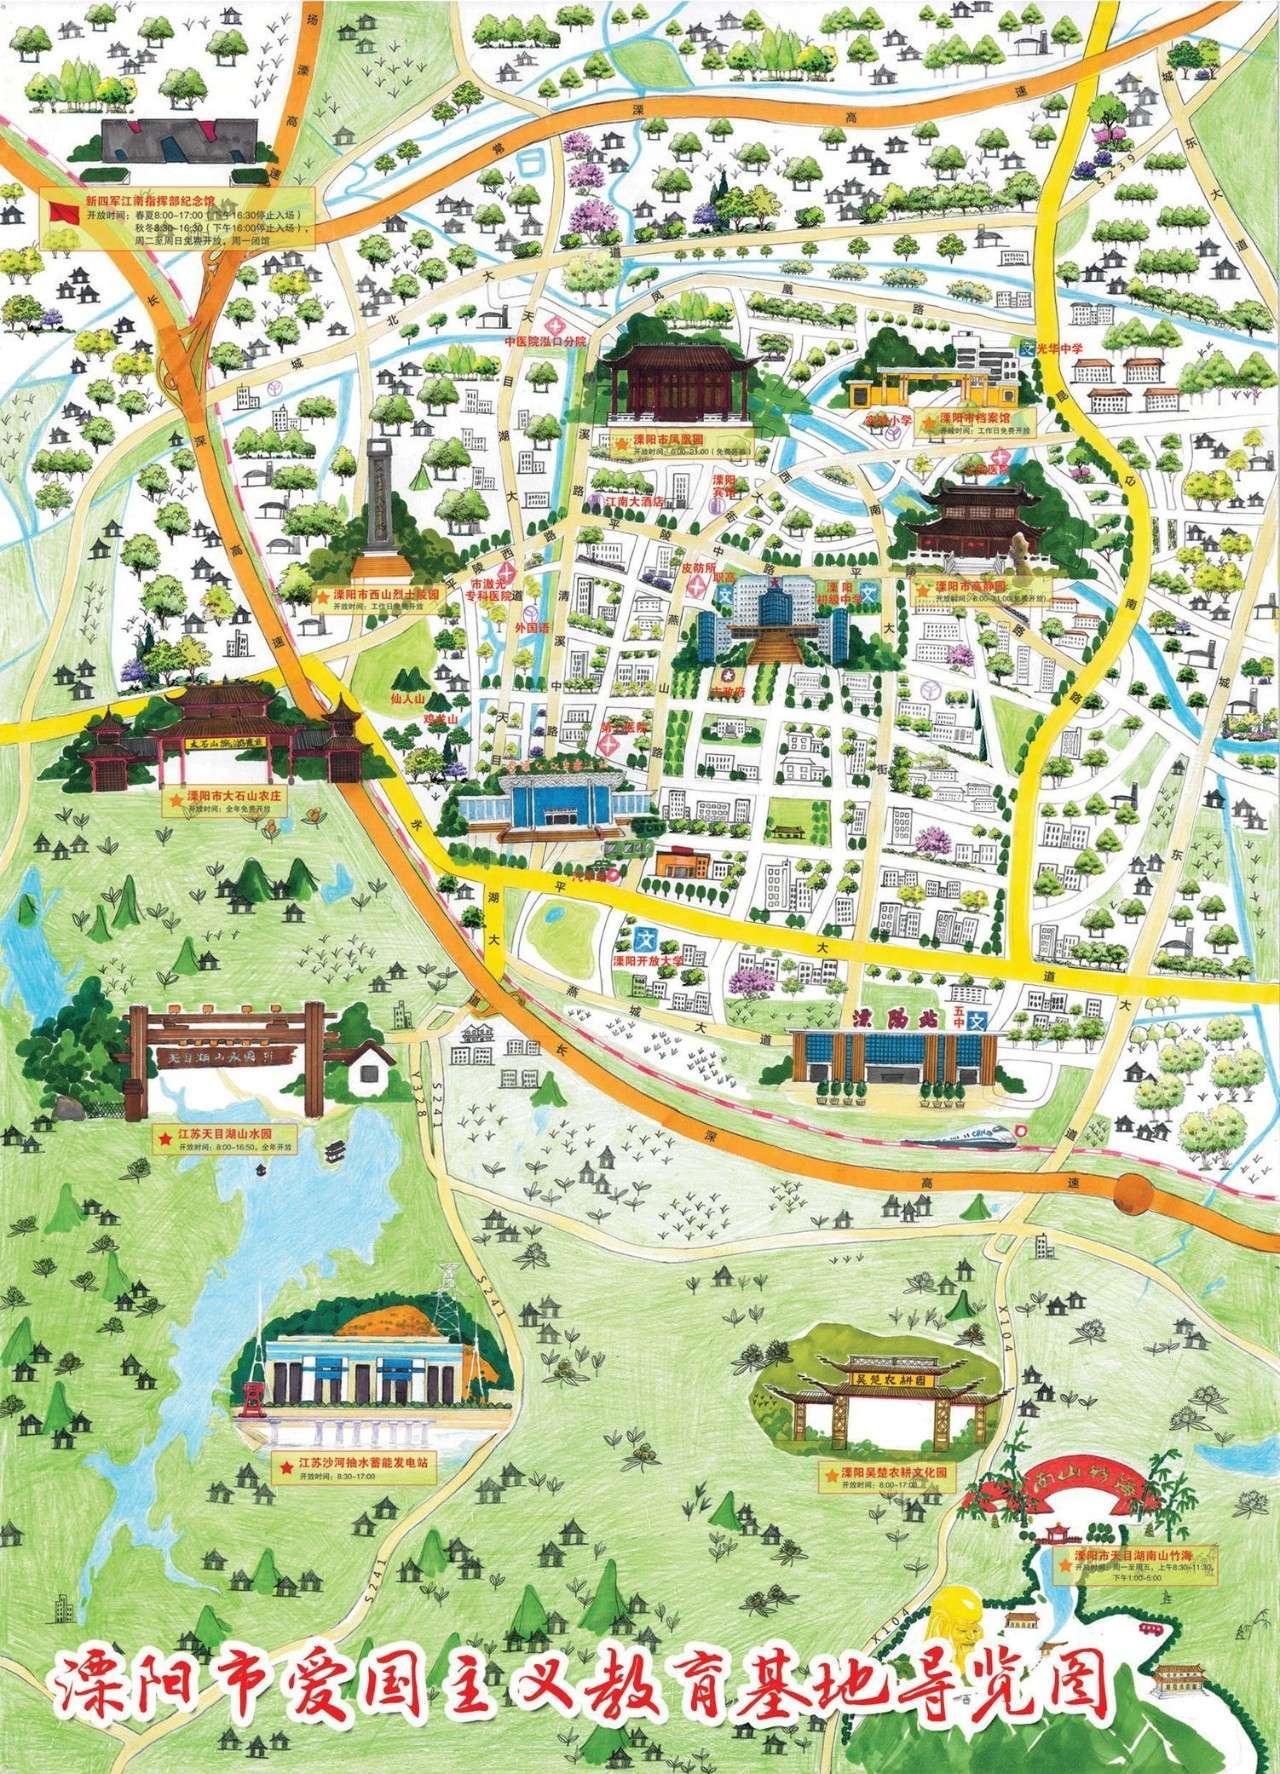 2016年常州市发布了《 手绘常州·爱国主义基地导览图(2016版)》,当